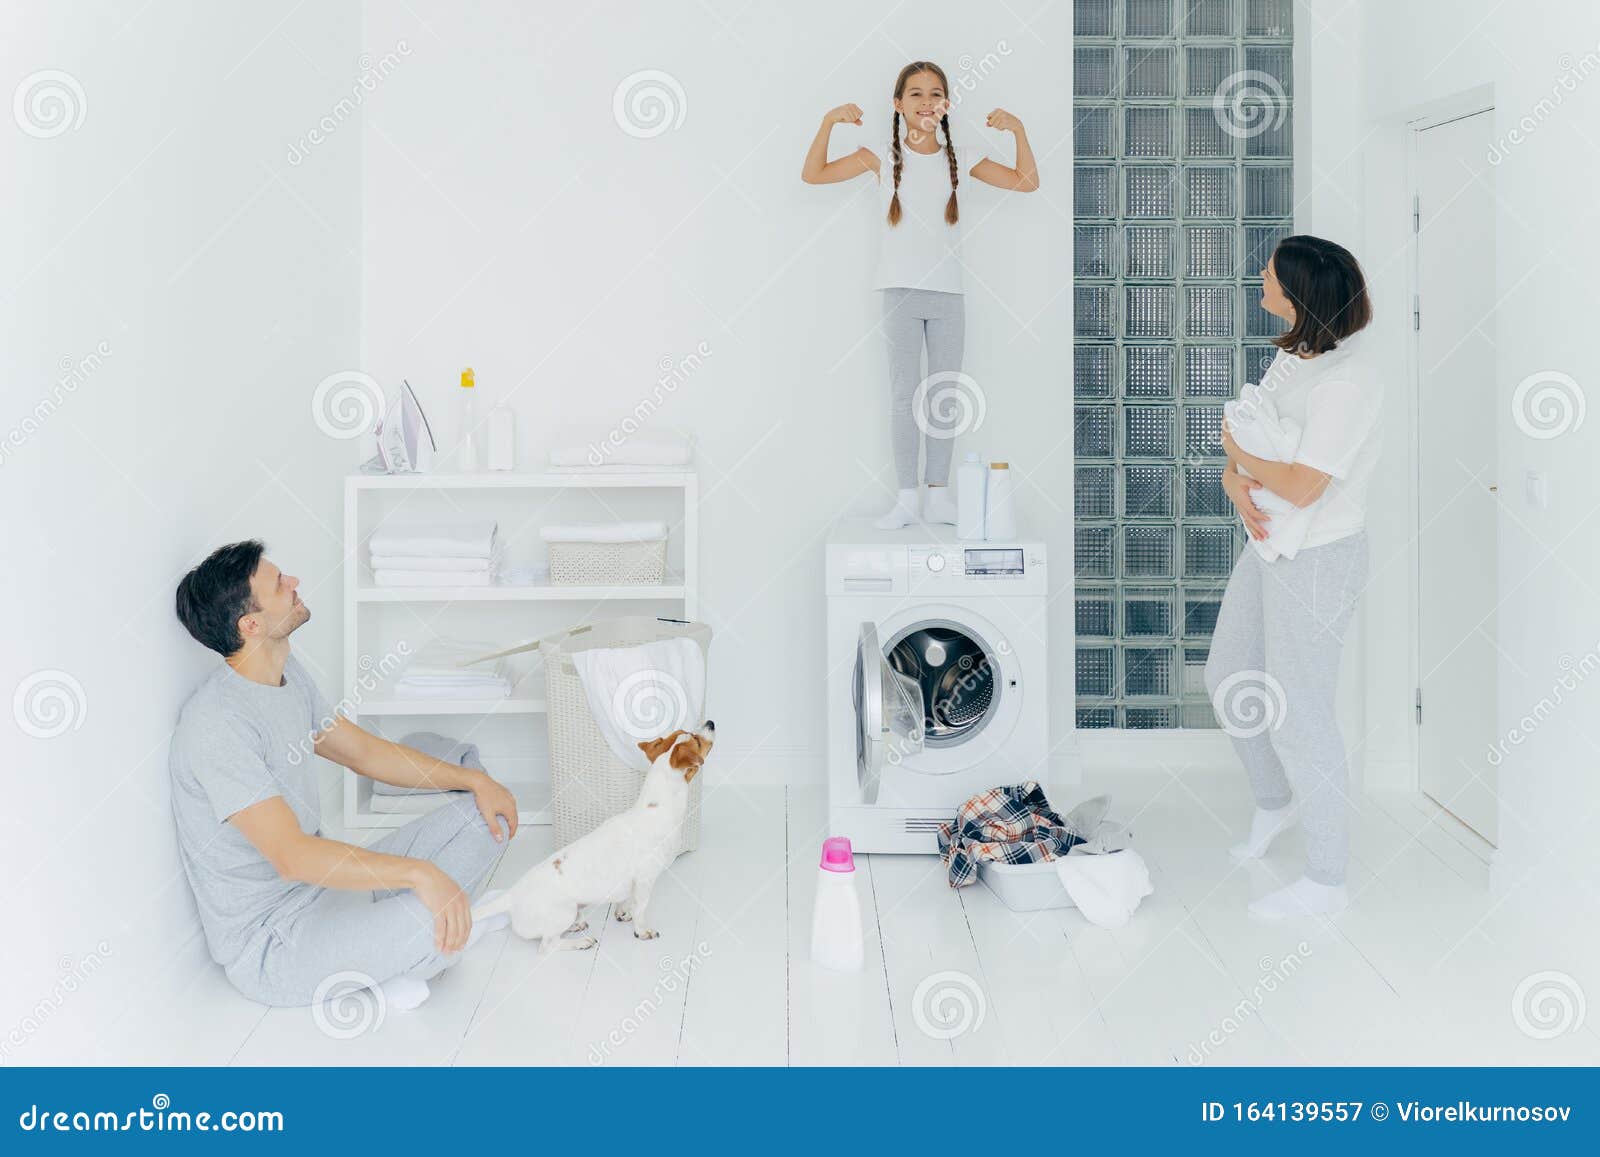 Фотография счастливых школьниц позирует на вершине стиральной машины, показывает мышцы, поднимает руки, готовая помочь родителям с стиркой или стиркой Женщины и мужчины позируют в стиральной комнате с собакой и маленьким ребенком